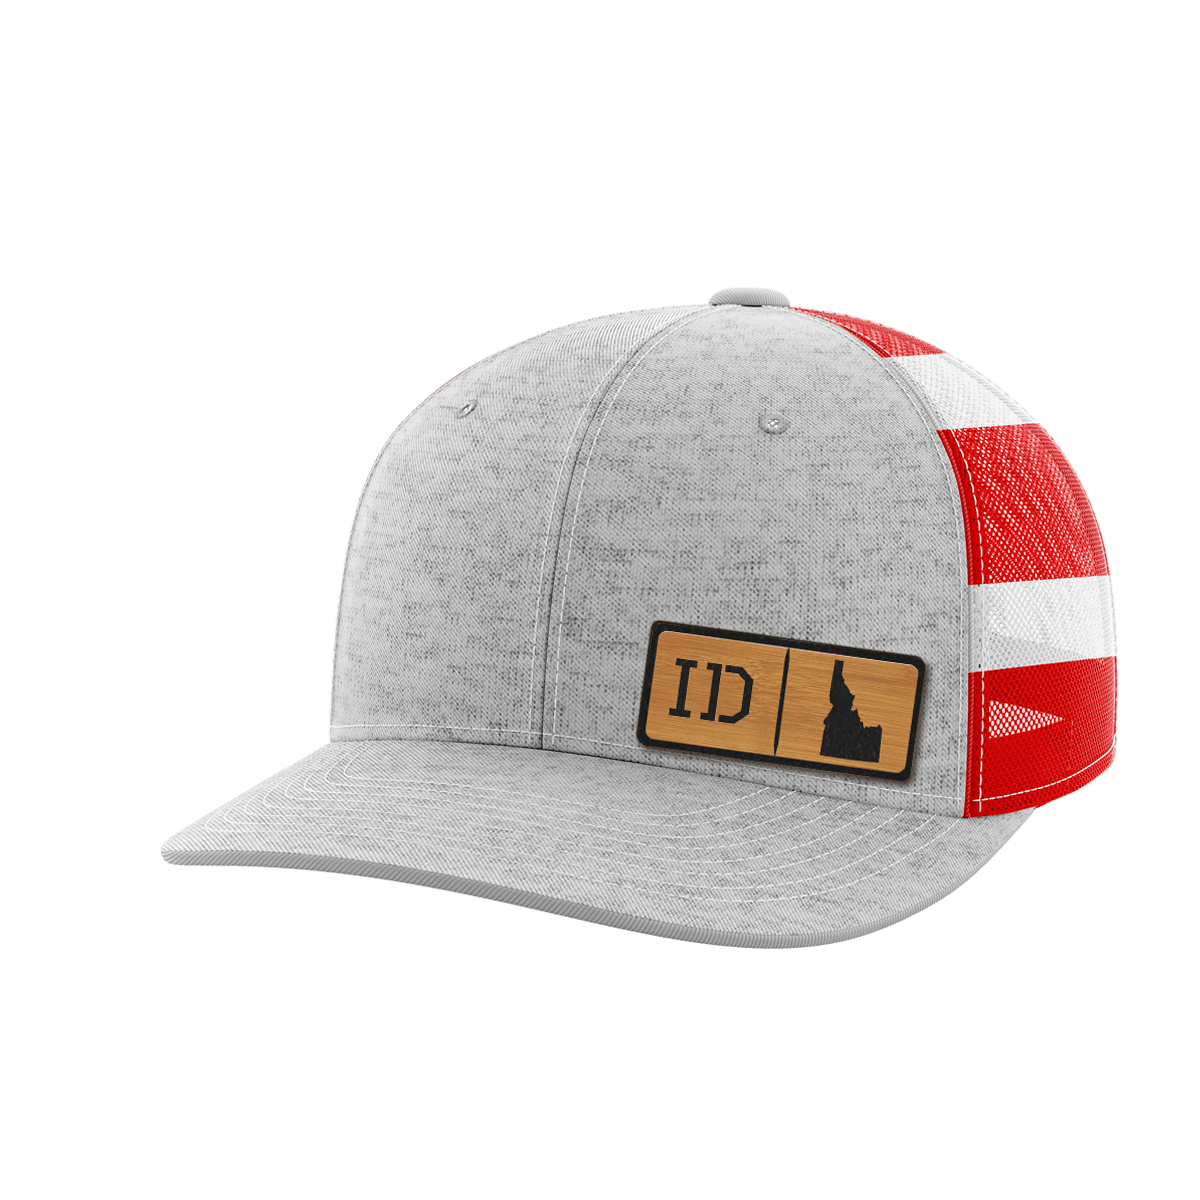 Thumbnail for Idaho Homegrown Hats - Greater Half